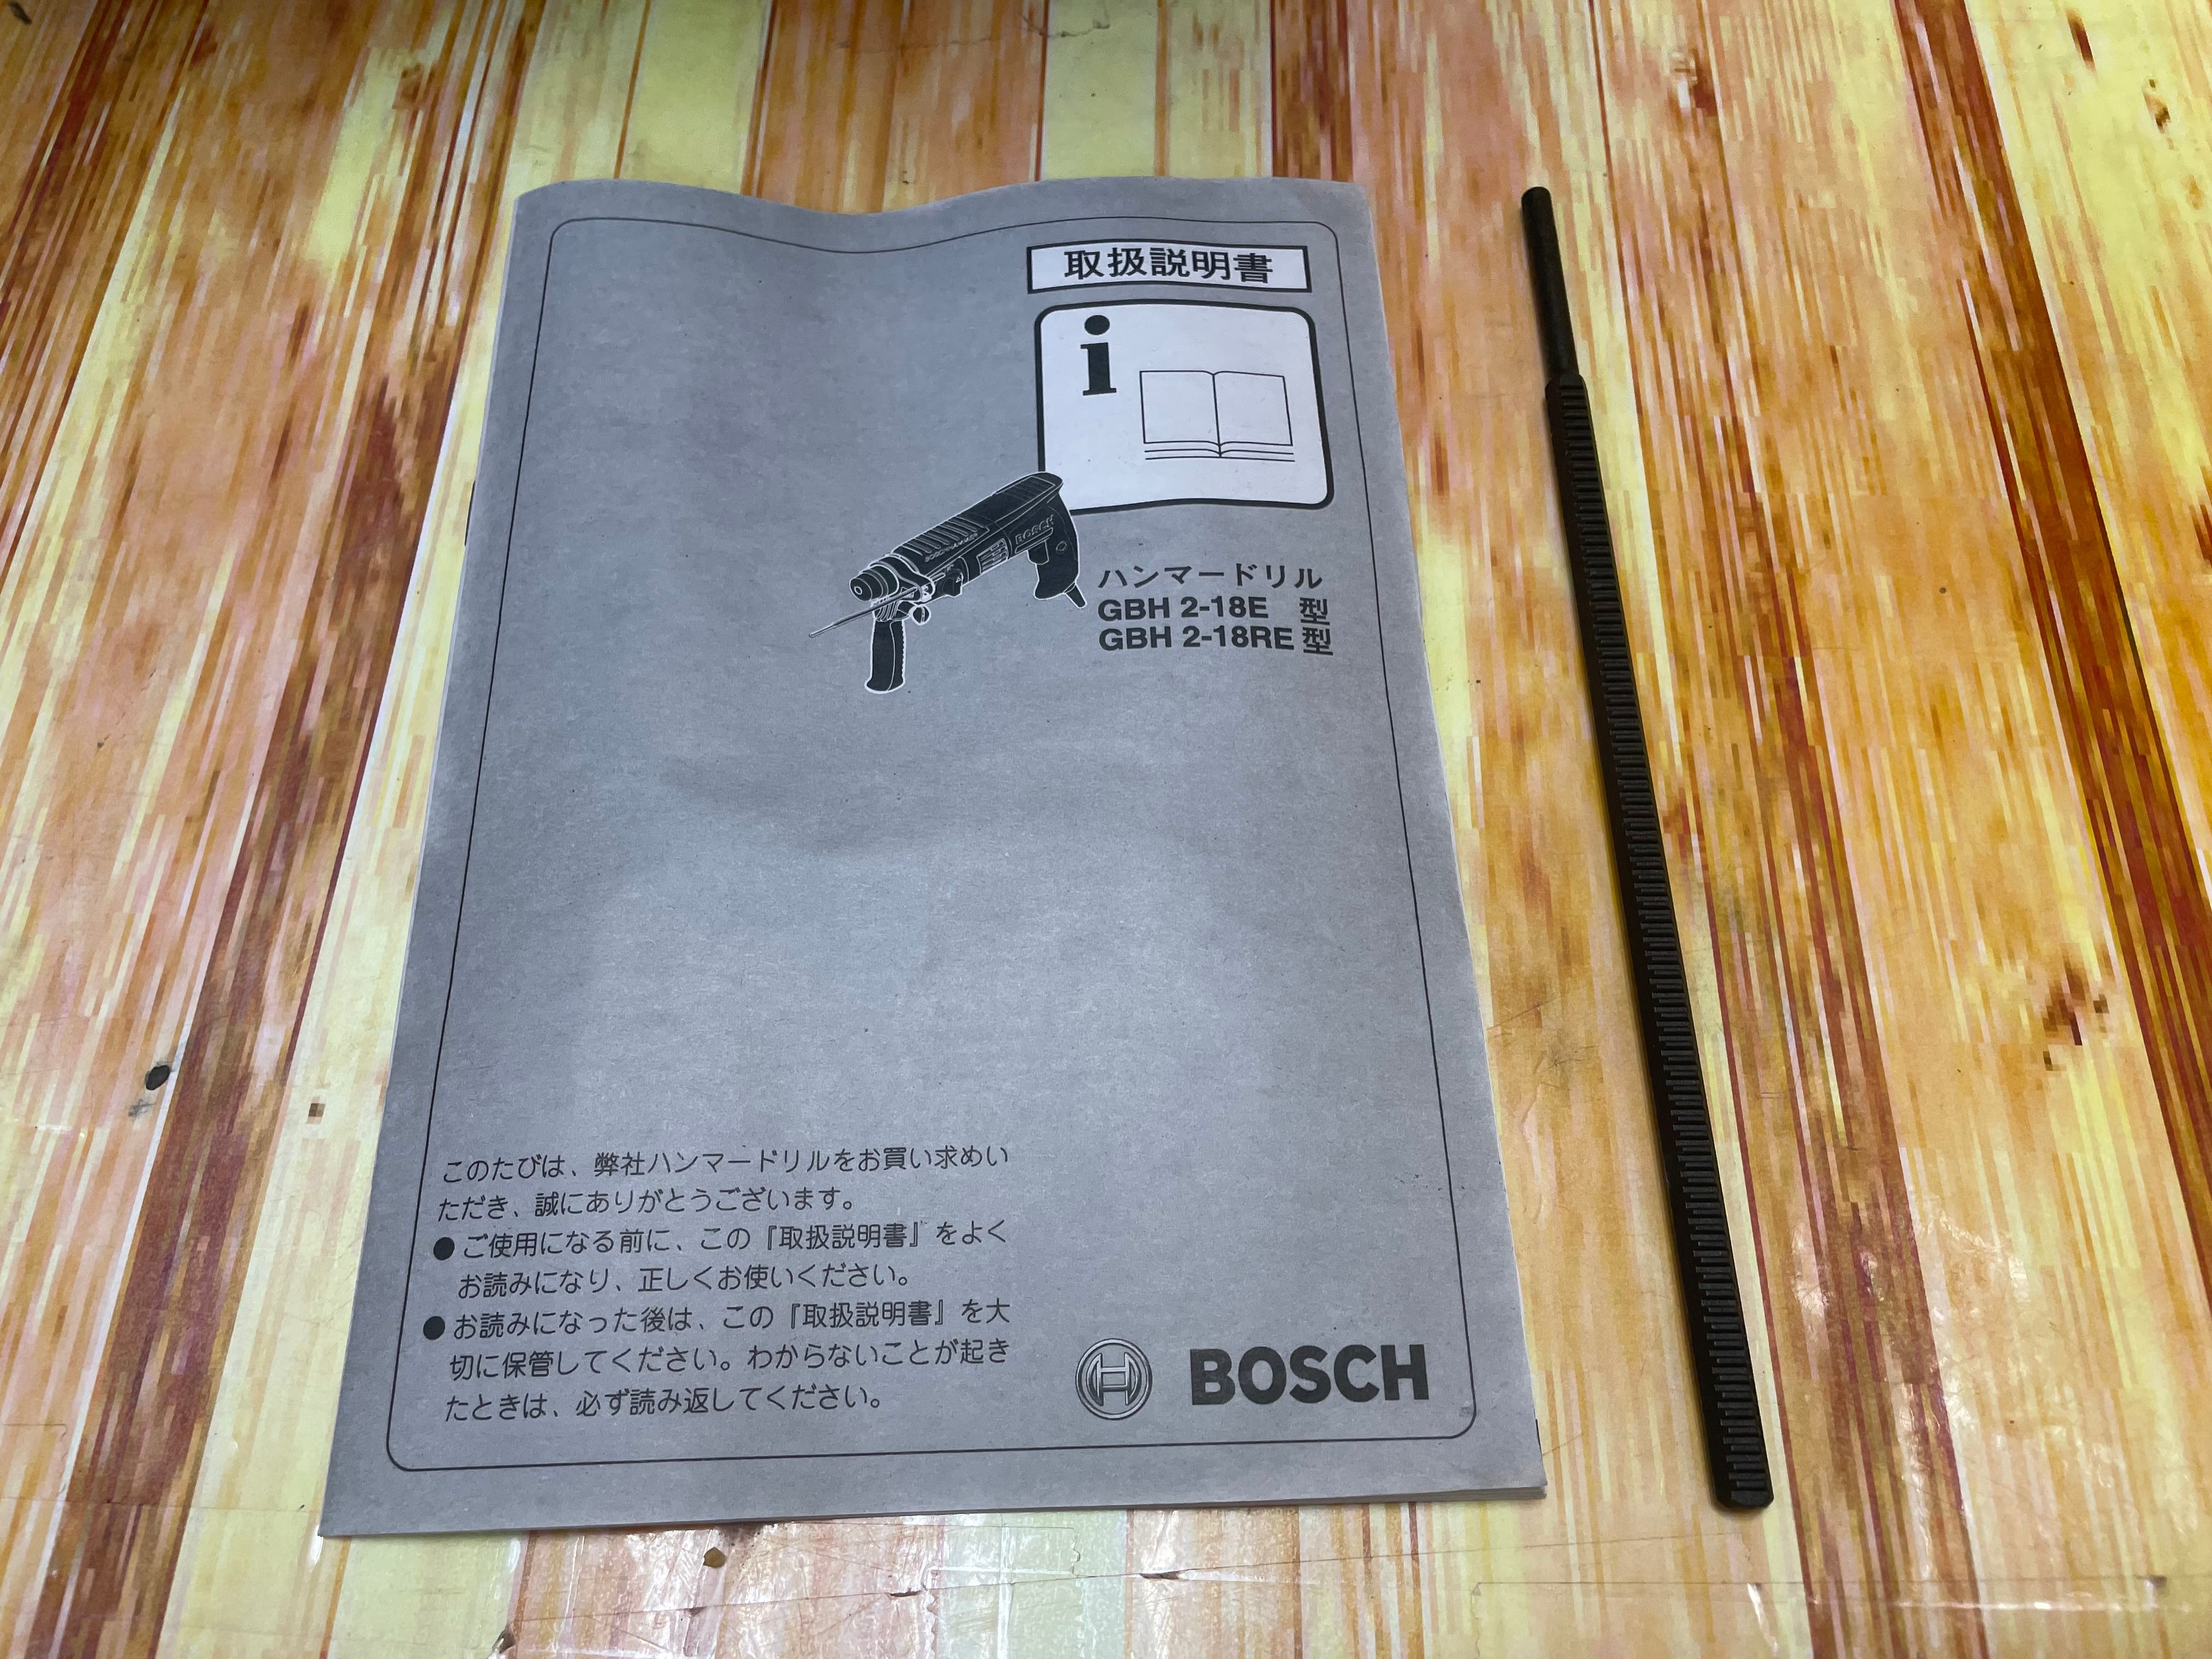 ☆ボッシュ(BOSCH) ハンマドリル GBH2-18RE【草加店】 | アクトツール 